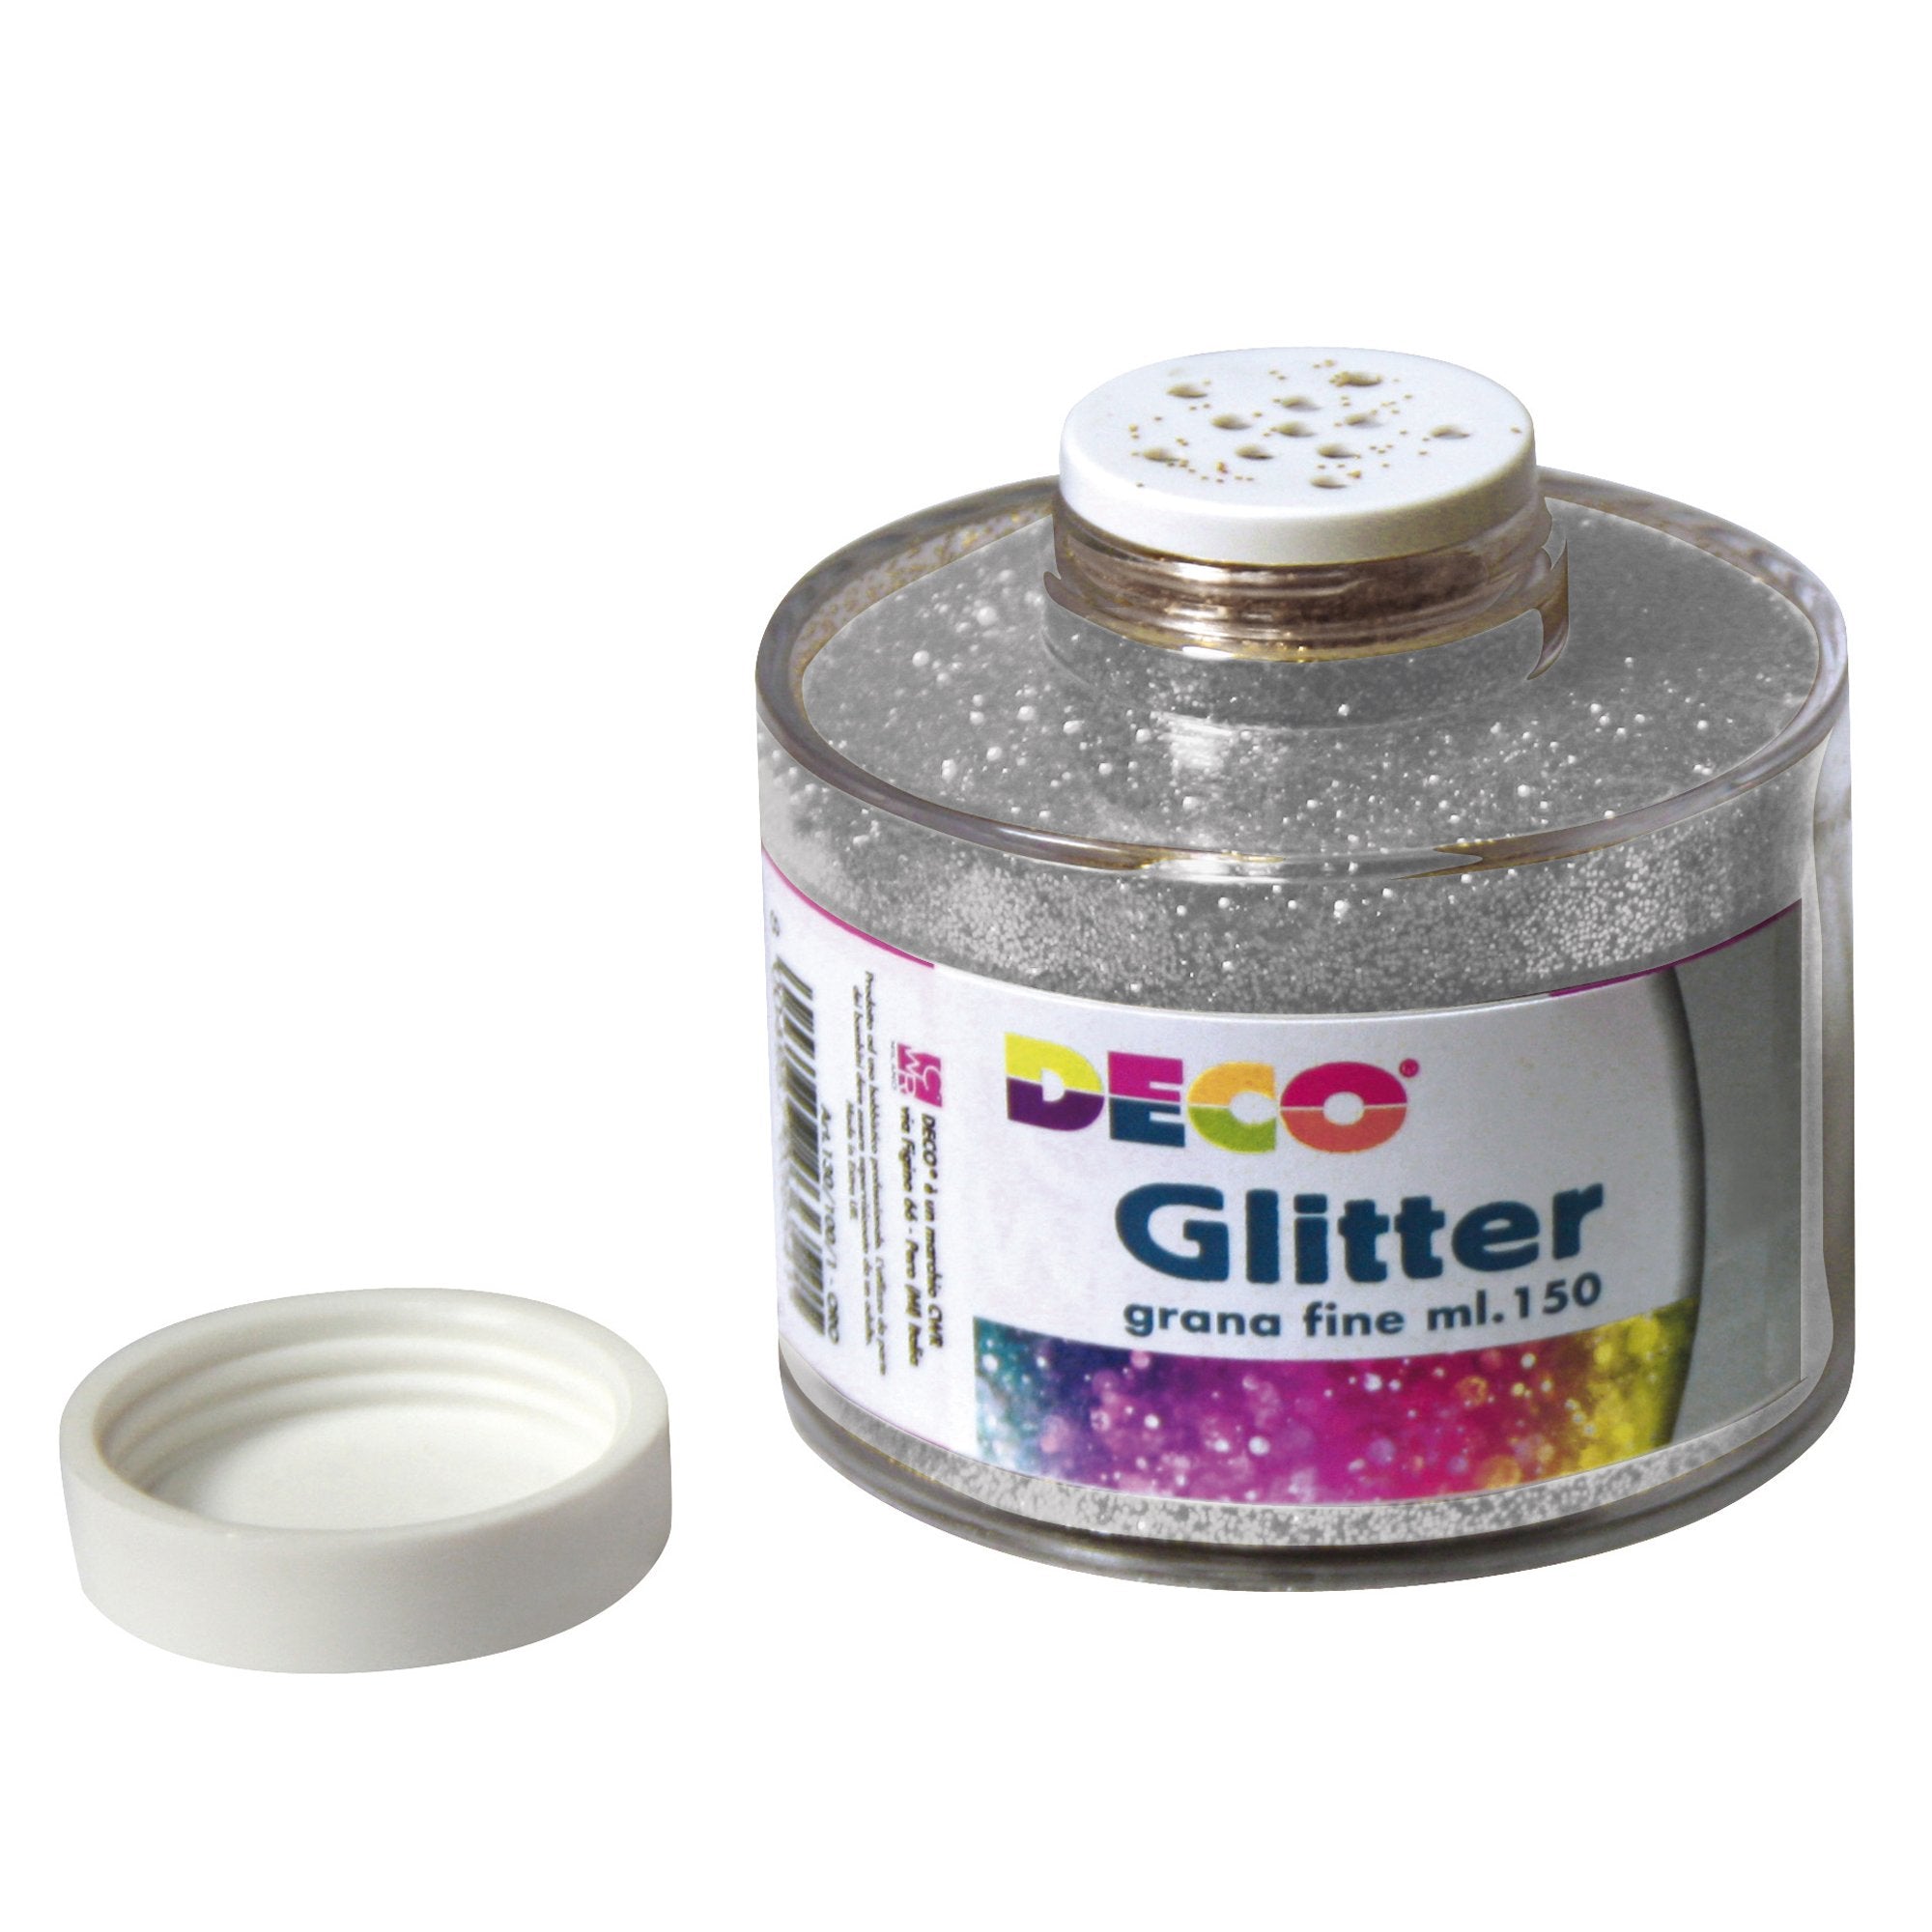 deco-barattolo-glitter-grana-fine-ml150-argento-art-130-100